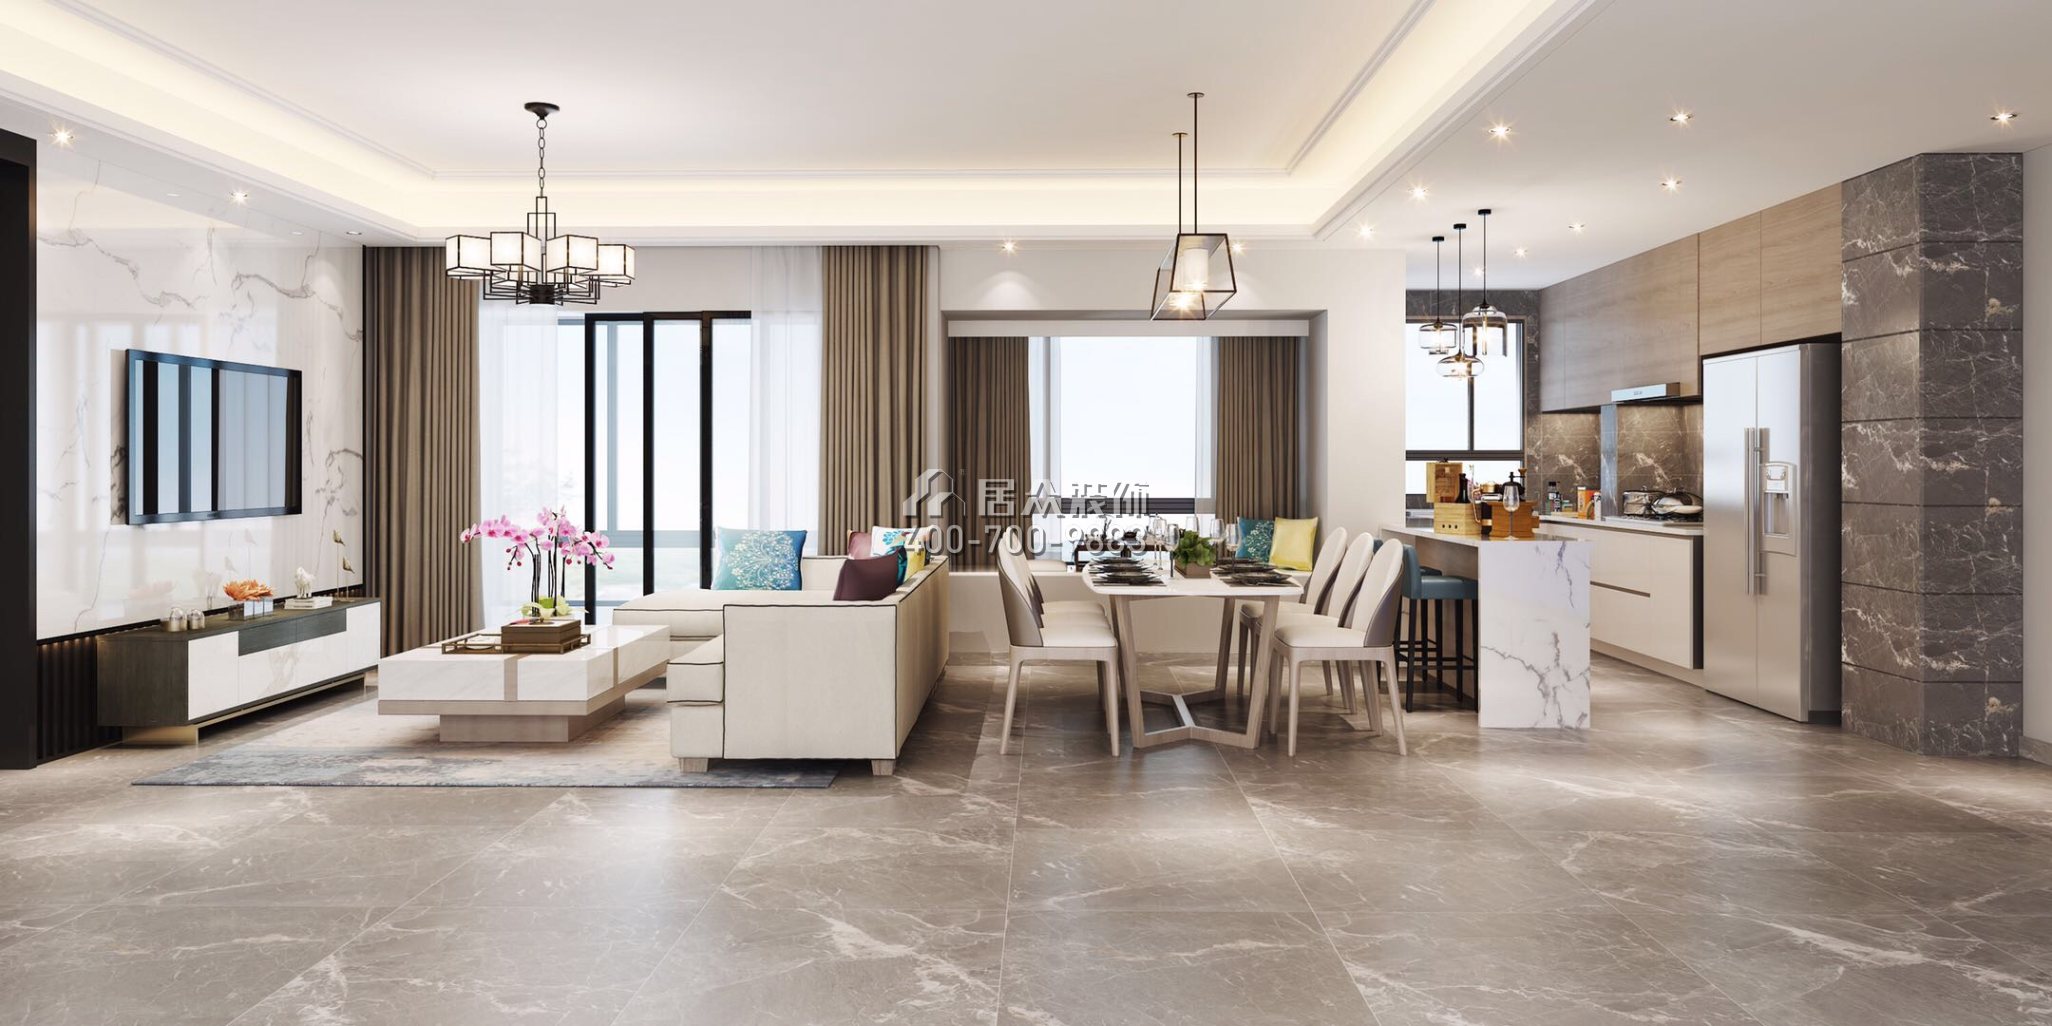 壹方中心玖譽120平方米現代簡約風格平層戶型客廳裝修效果圖